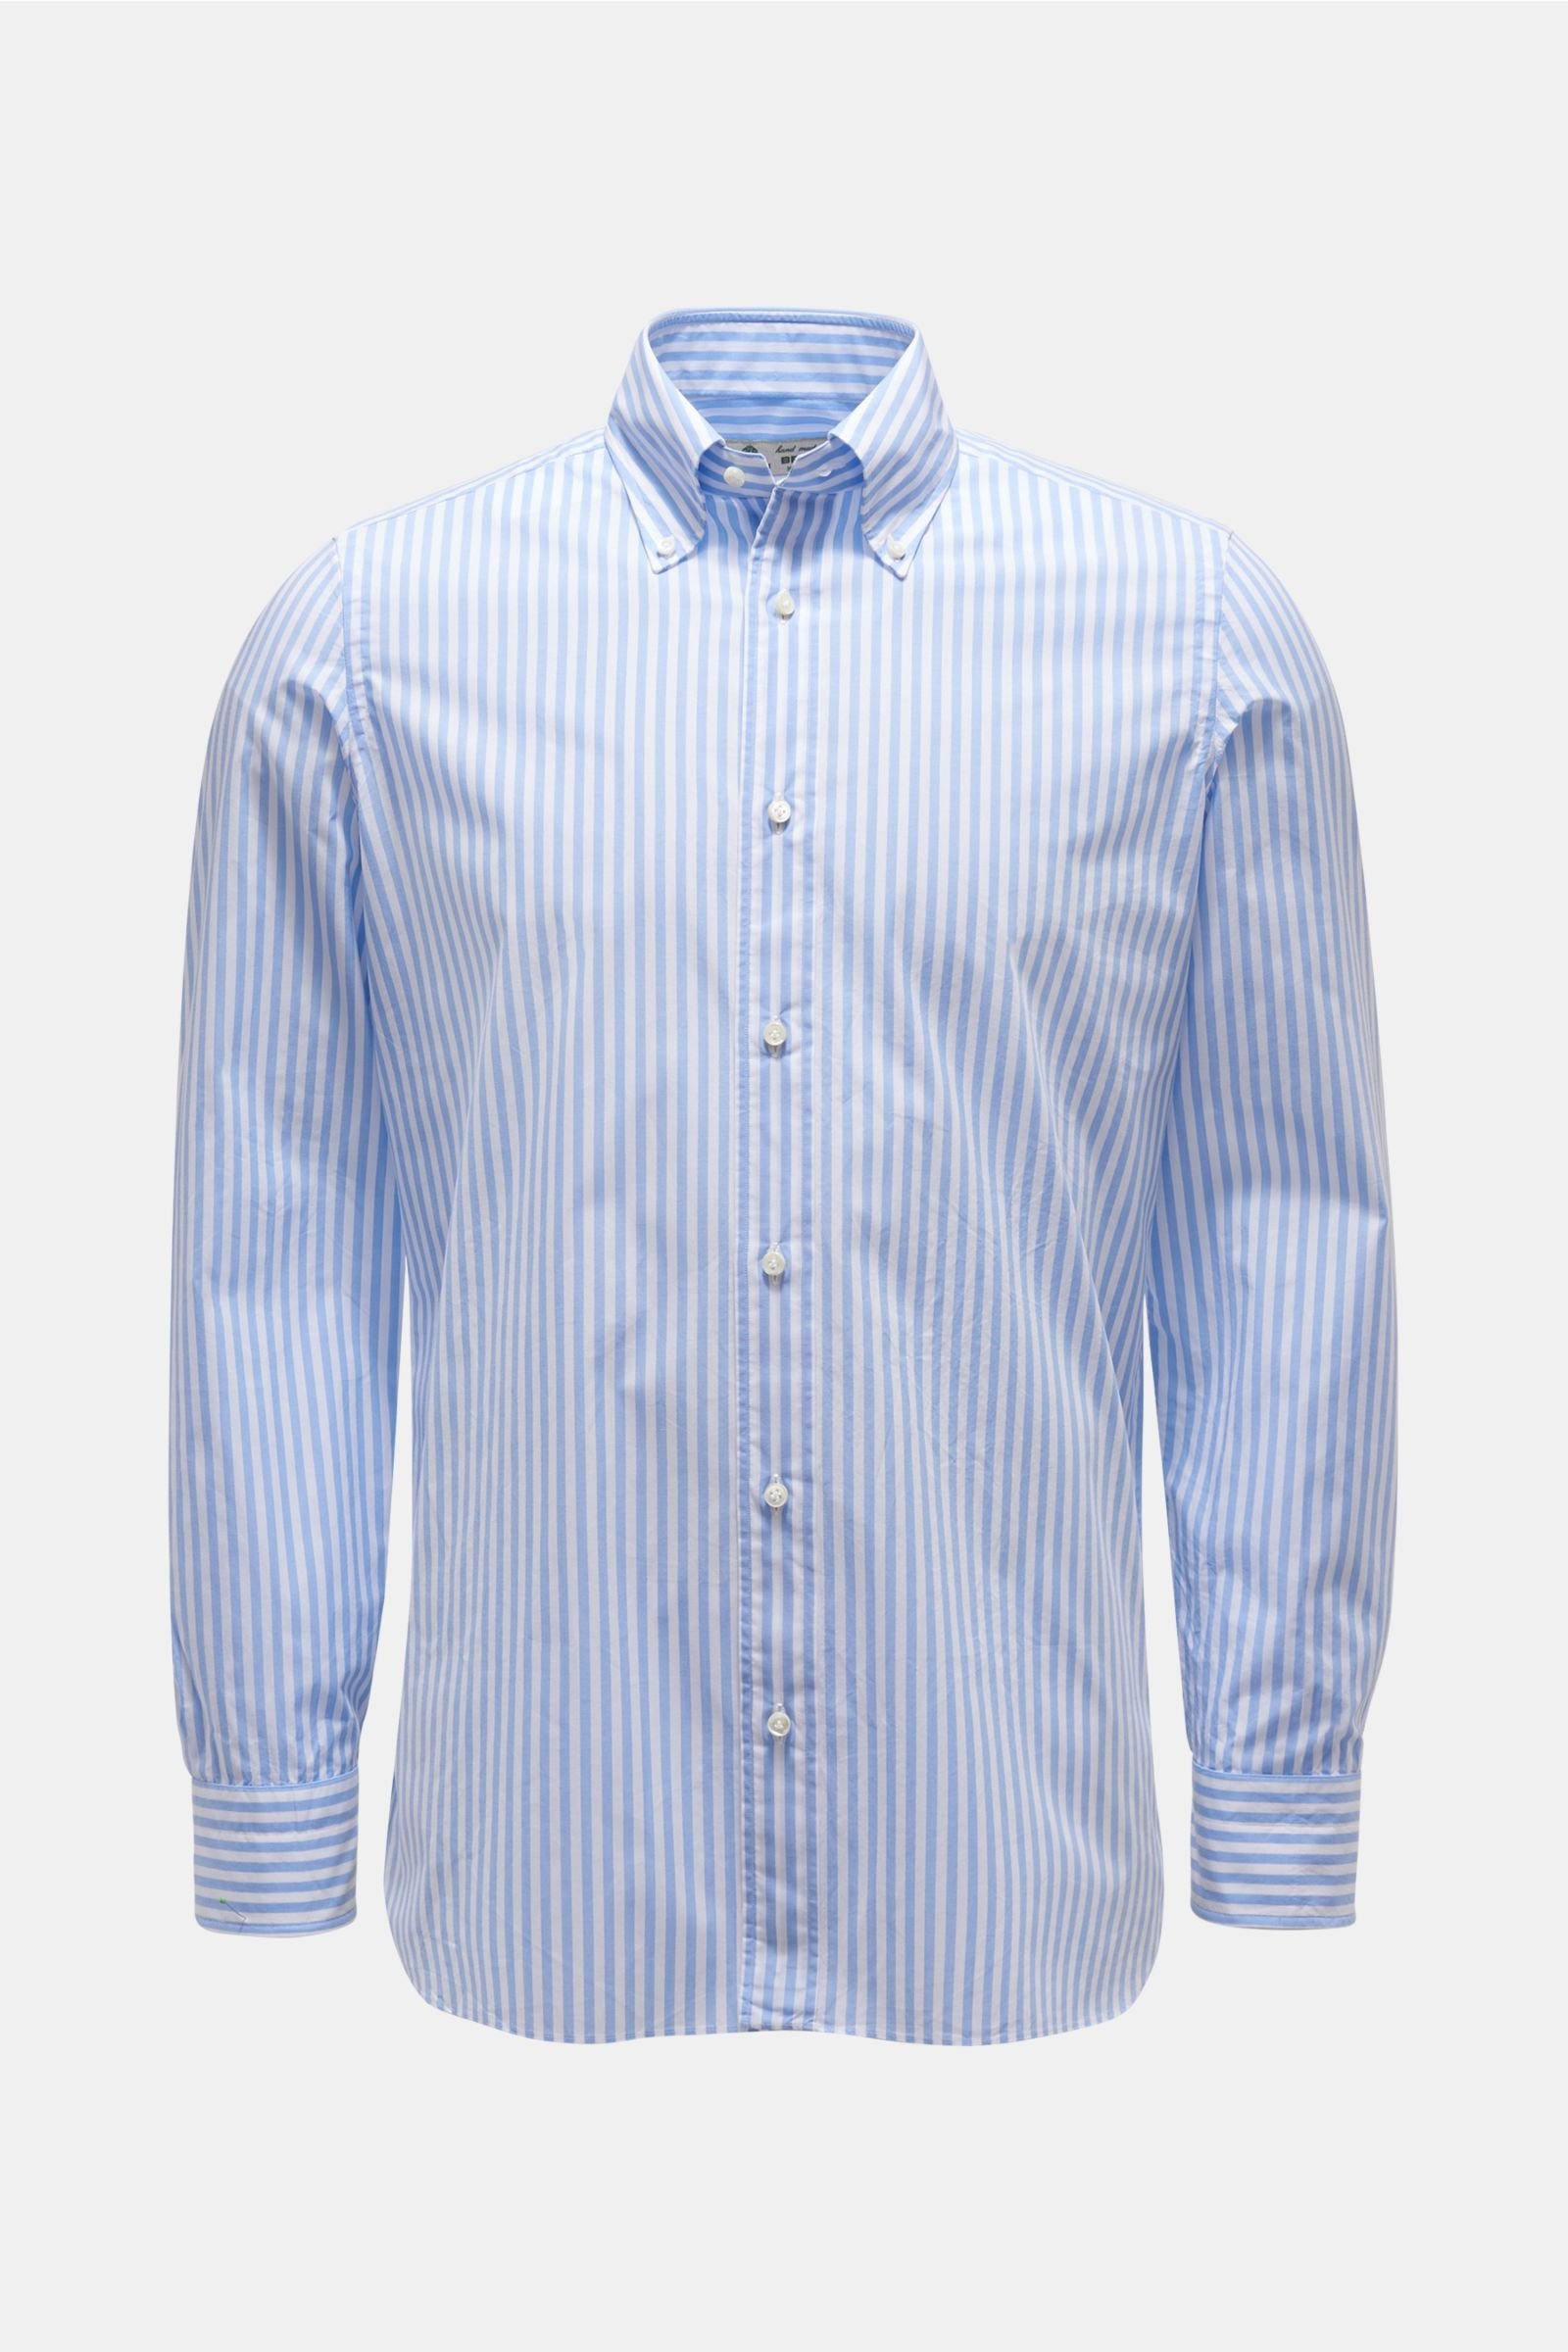 Casual Hemd Button-Down-Kragen hellblau/weiß gestreift